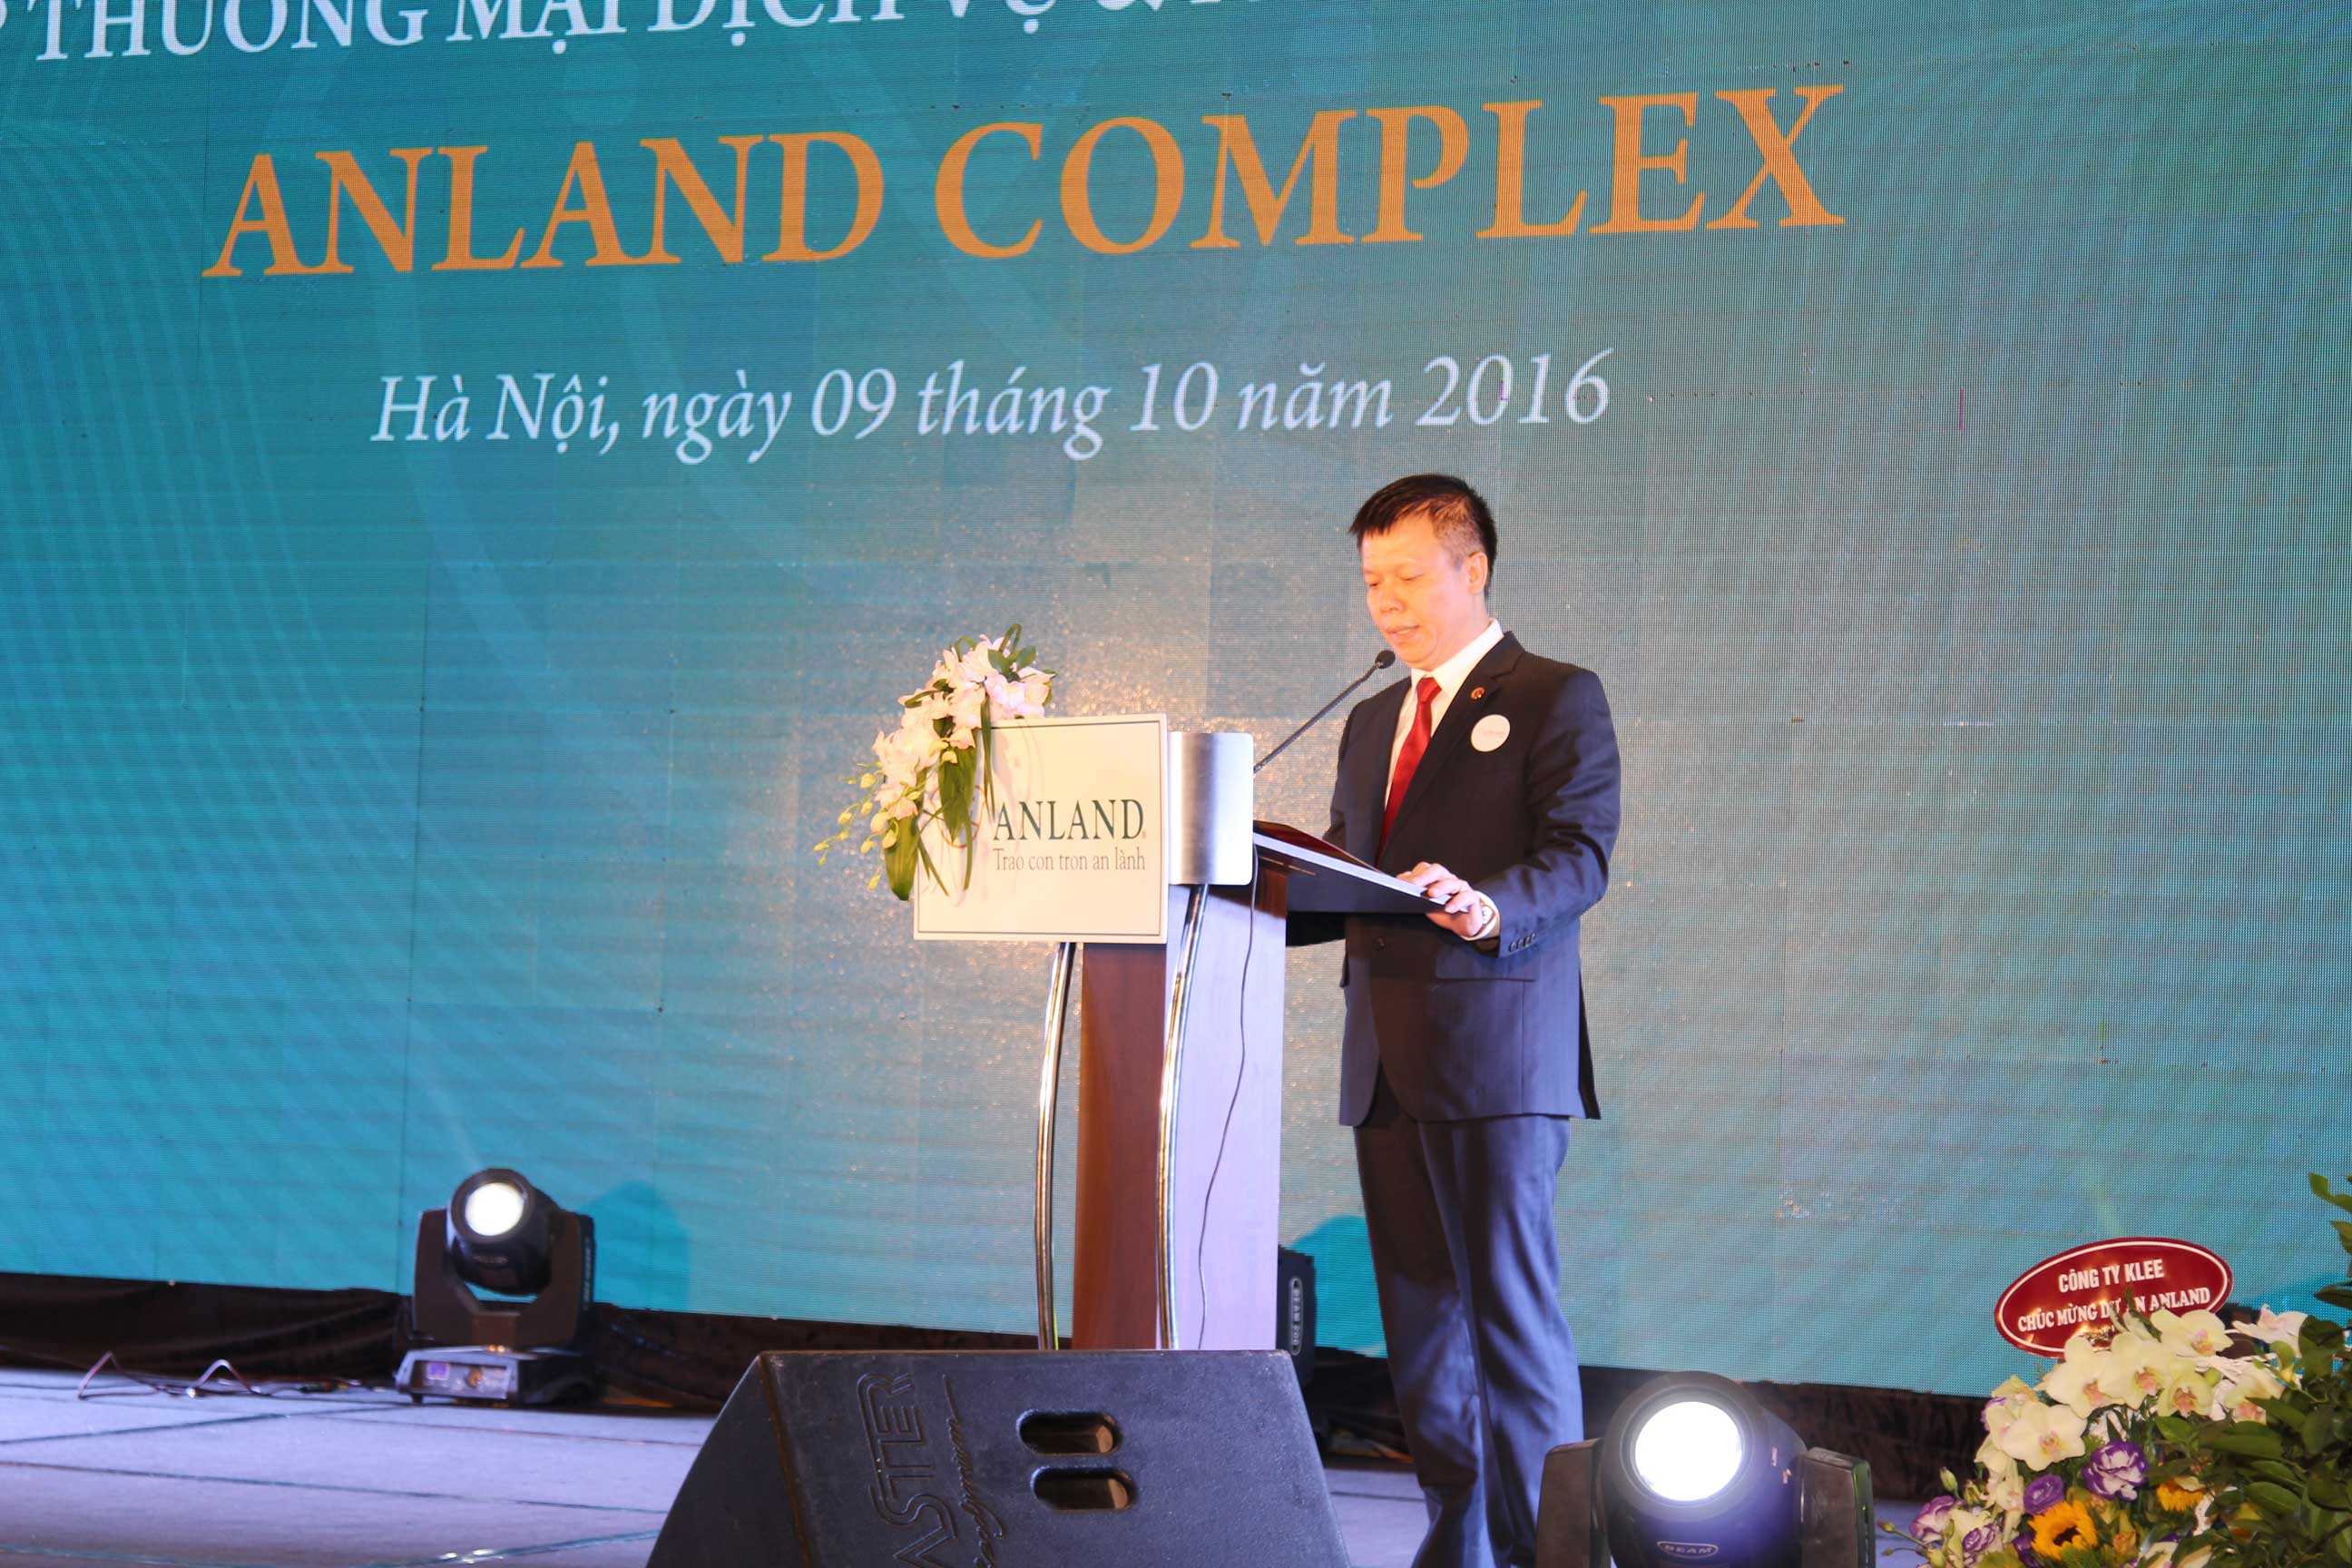 Ông Đào Tiến Dũng, Chánh Văn phòng HĐQT Tập đoàn Nam Cường giới thiệu về sản phẩm bất động sản mới của tập đoàn